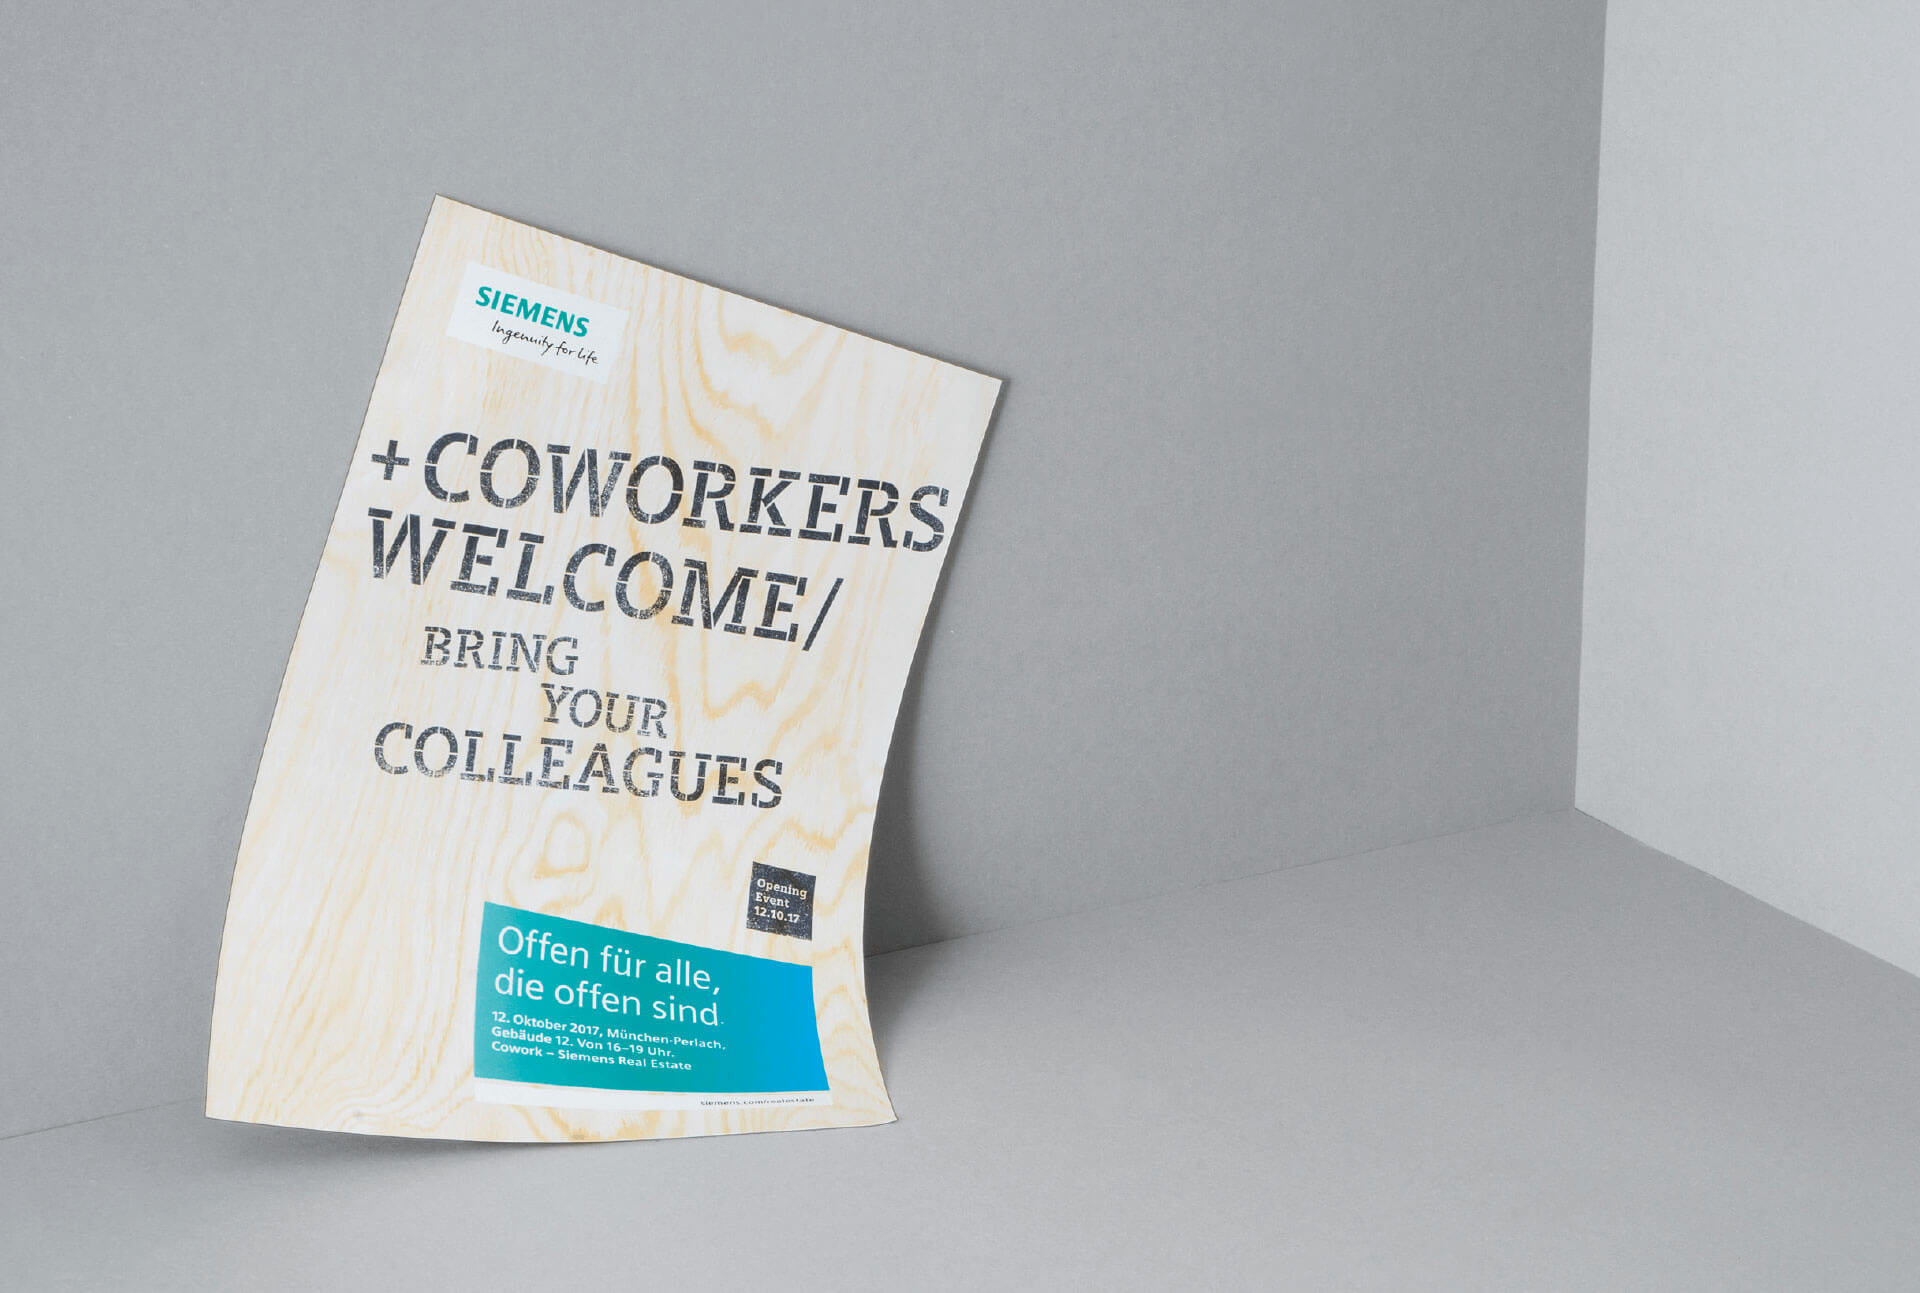 Werbeplakat für Siemens Coworking Space mit Text Coworkers Welcome/ Bring your colleagues mit Holztextur im Hintergrund liegt in einer grauen Ecke